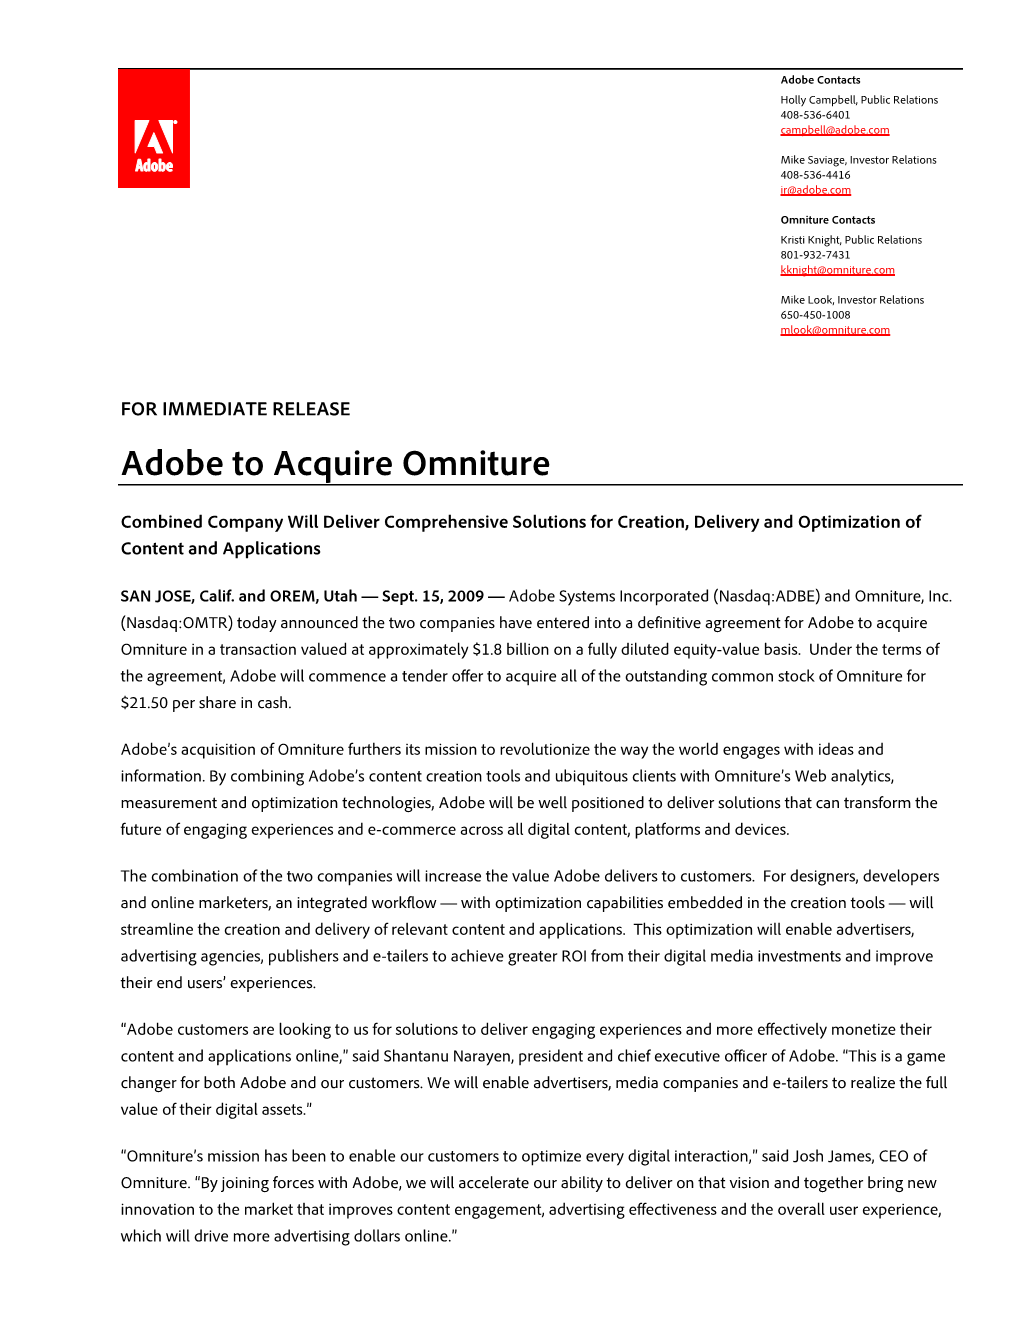 Adobe to Acquire Omniture